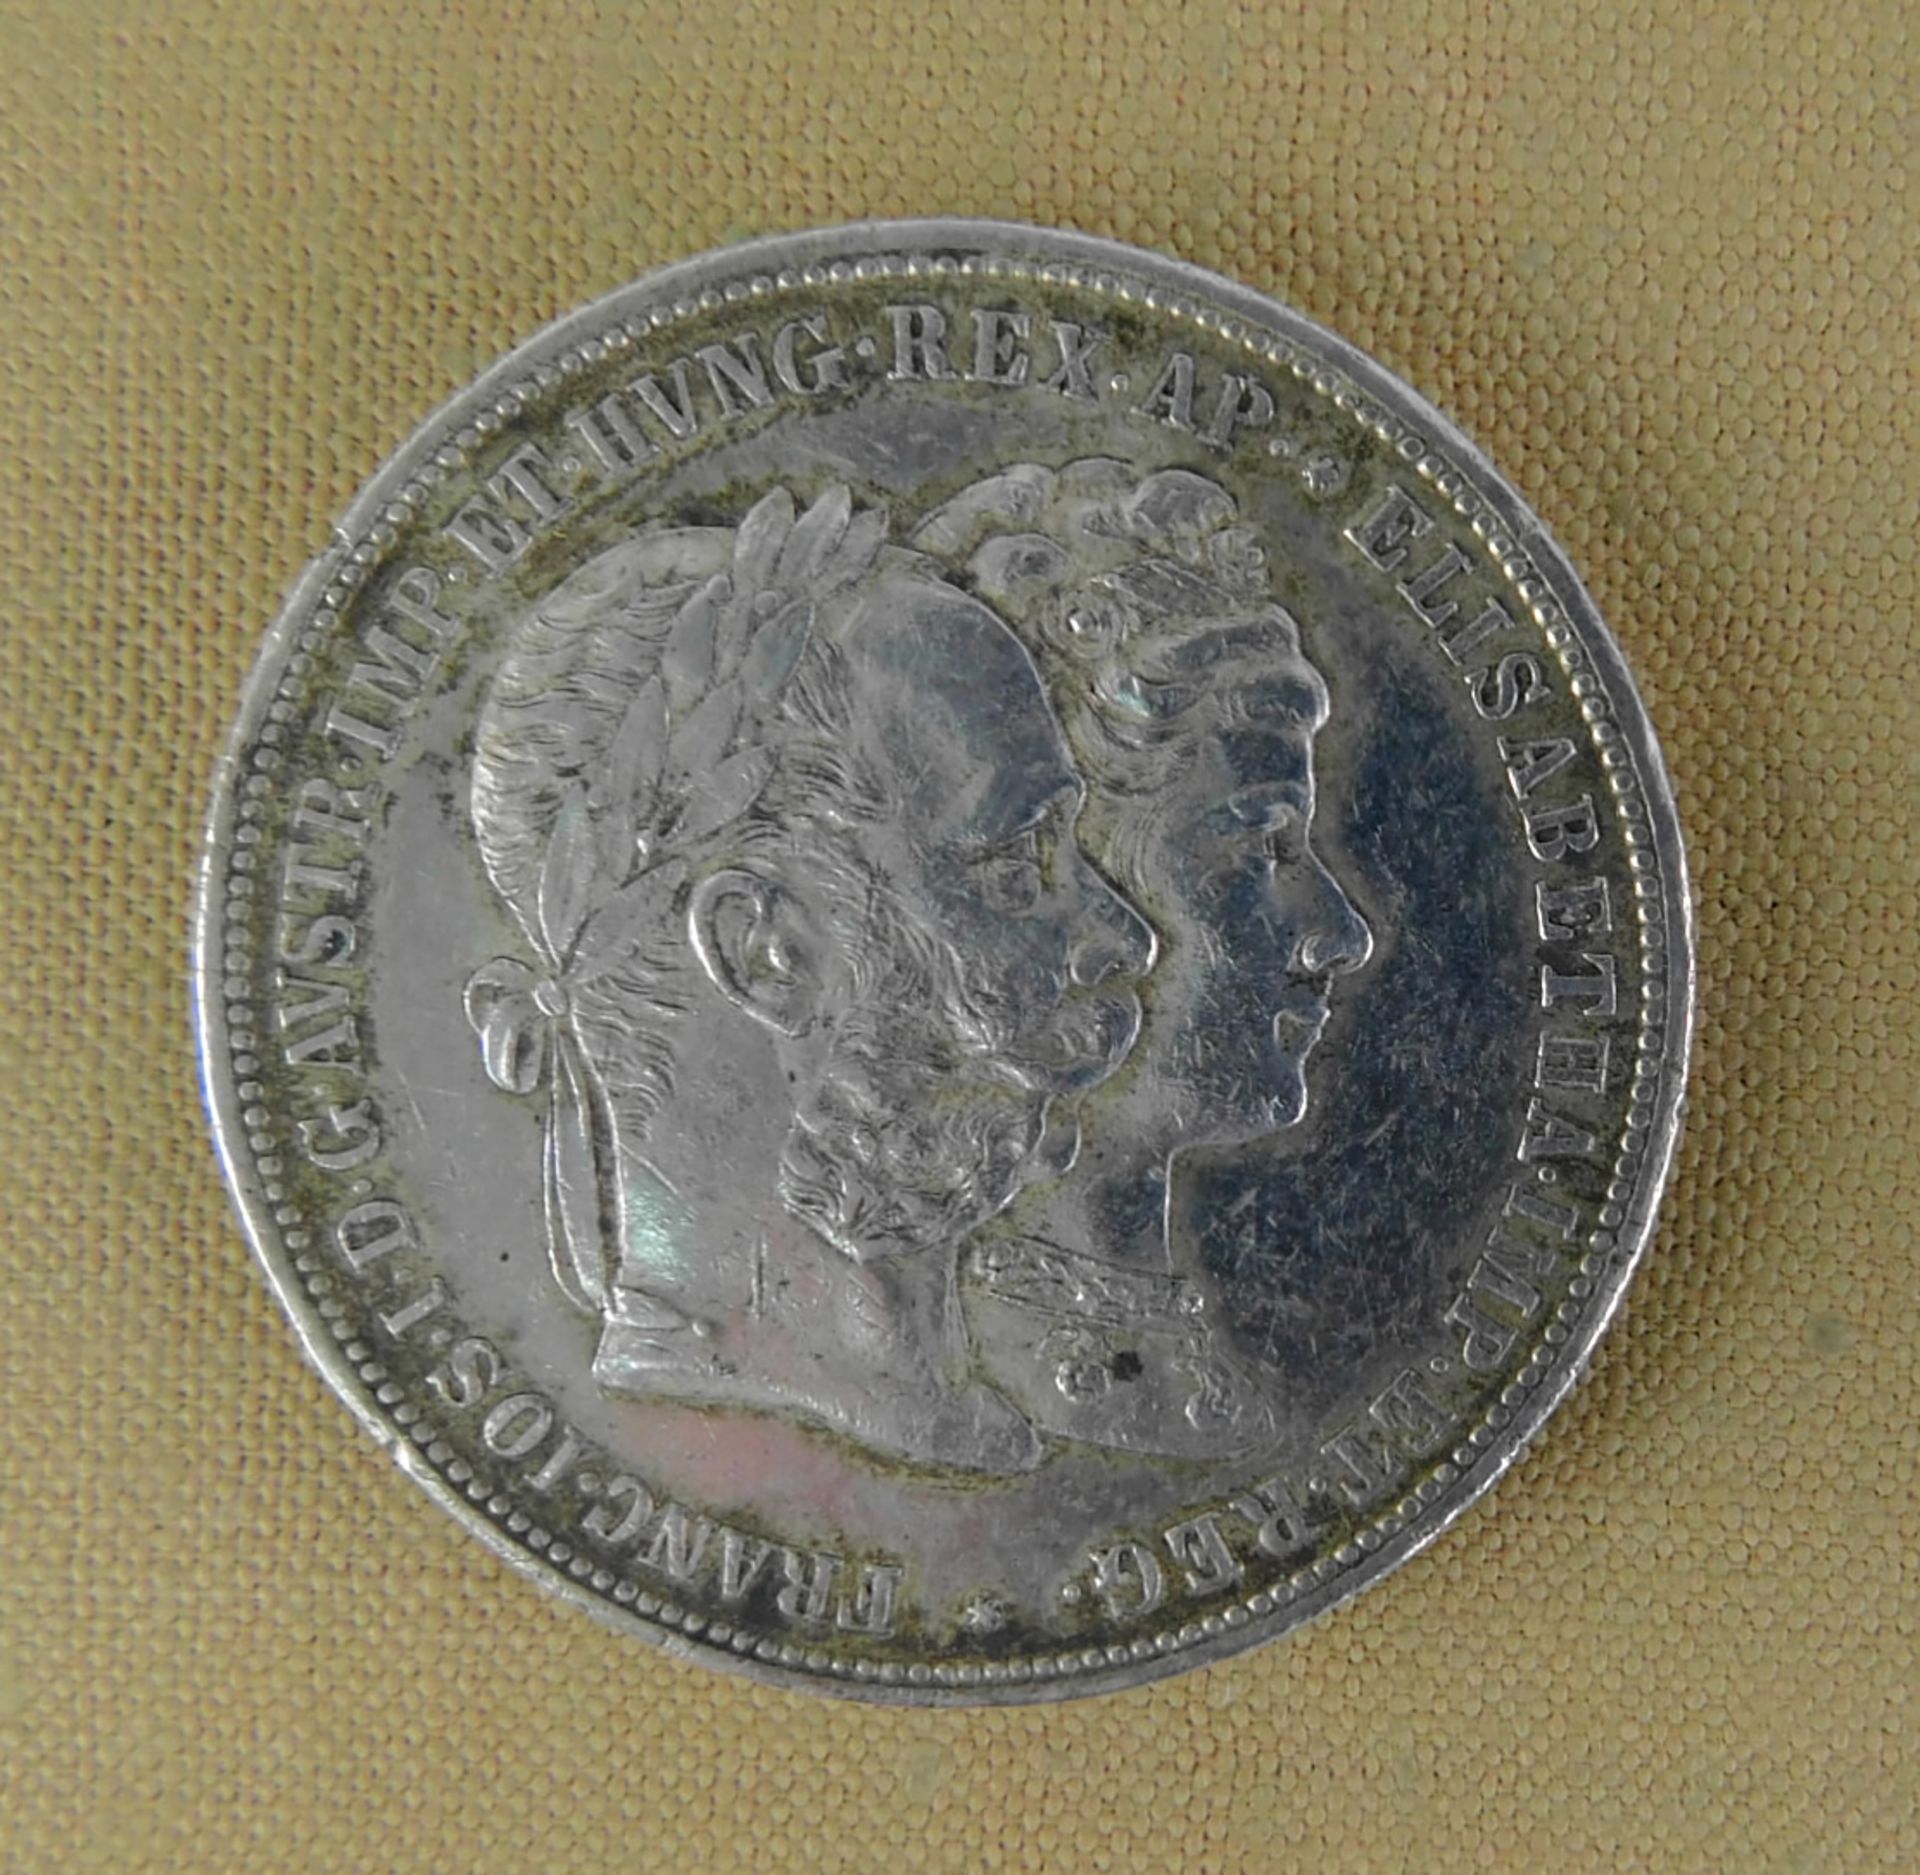 Silbermünze, 2 Gulden Österreich 1879 Silberhochzeit Kaiser Franz Joseph I./ Elisabeth